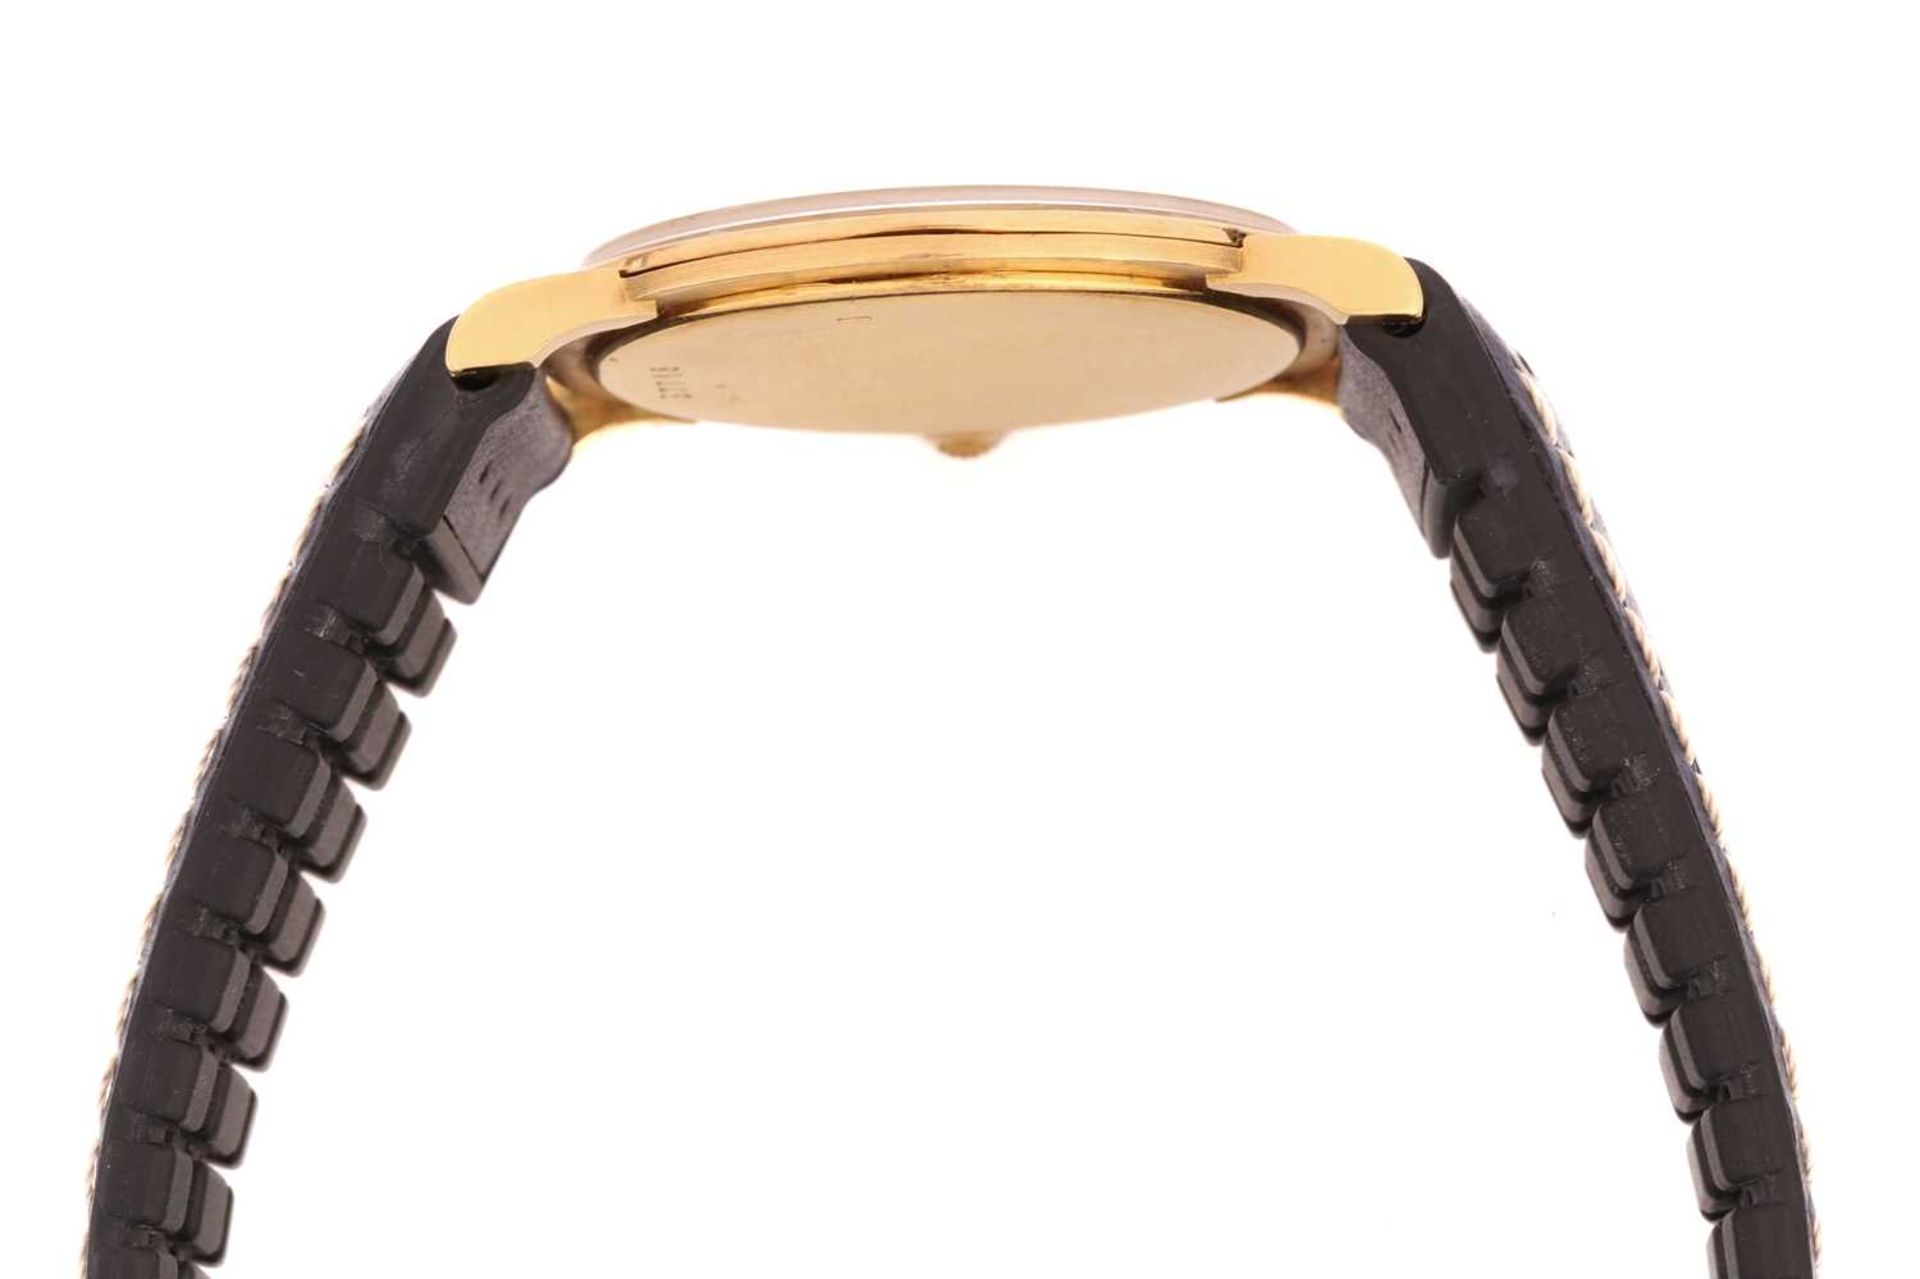 An Audemars Piguet classic gold wristwatch, featuring a Swiss-made hand-wound mechanical movement in - Image 5 of 13